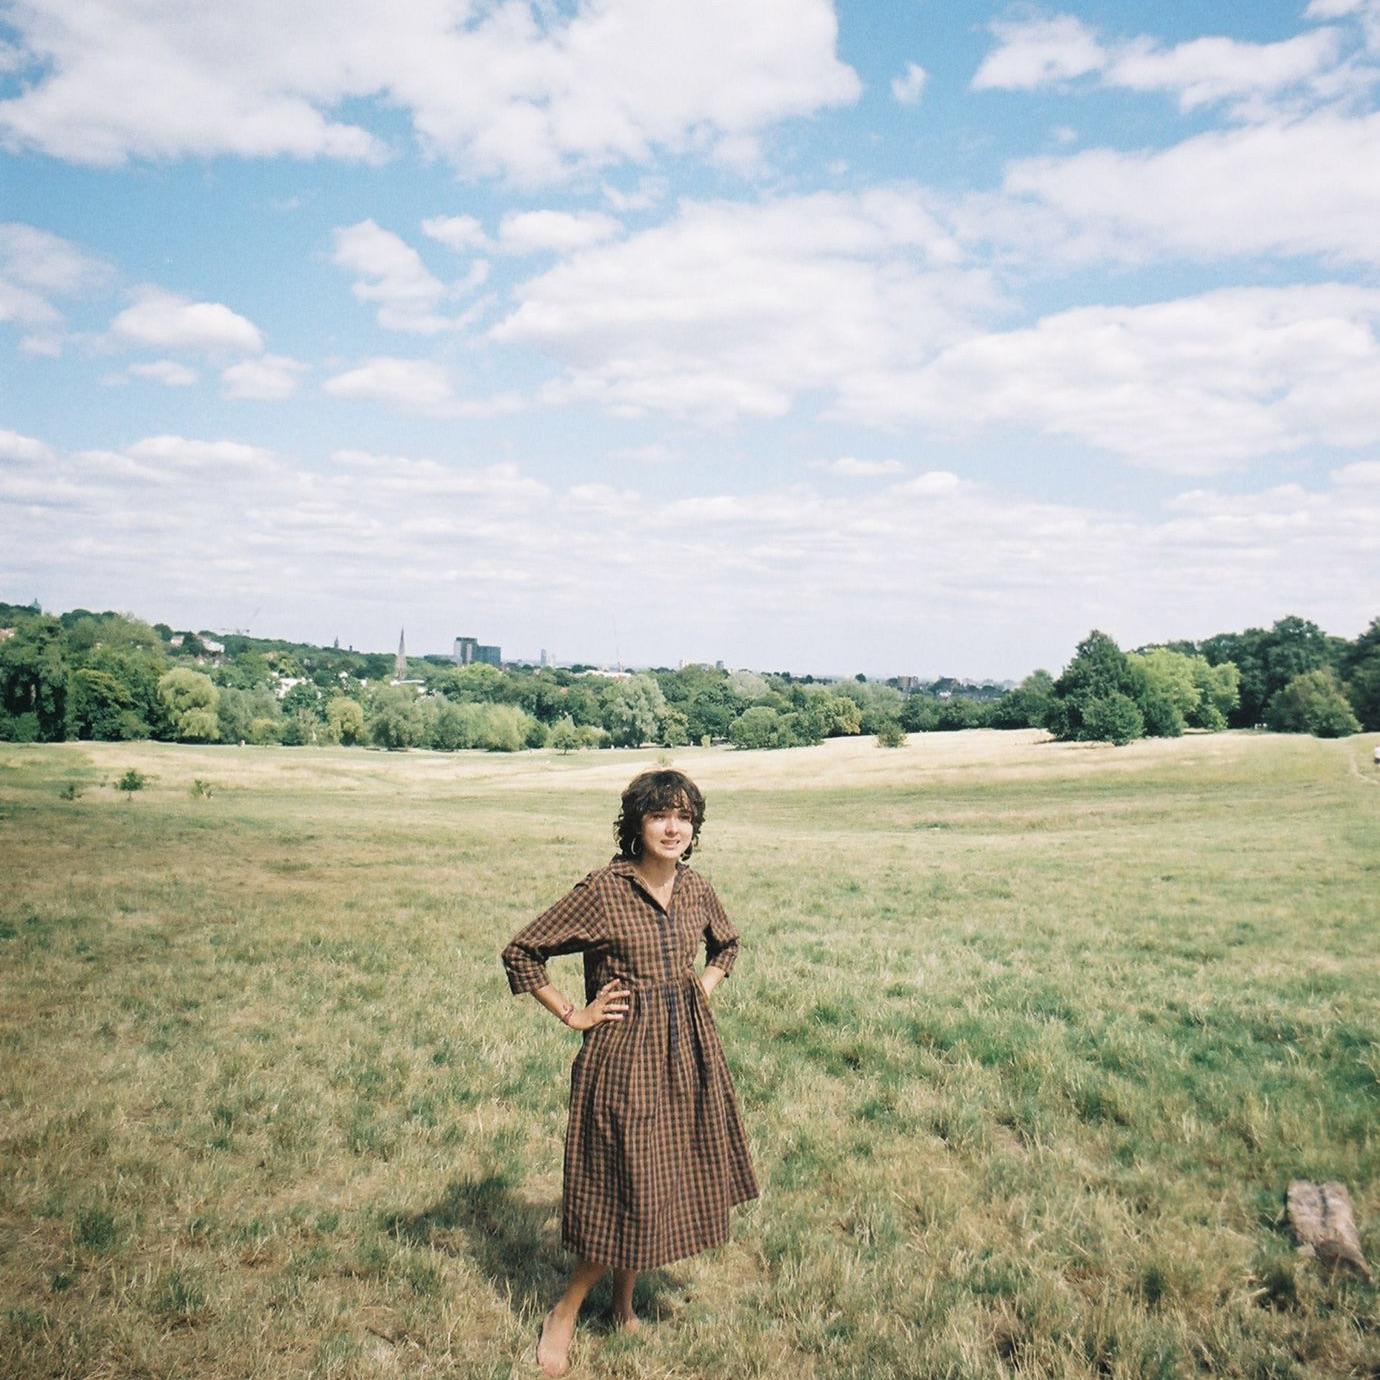 person in summer dress in field